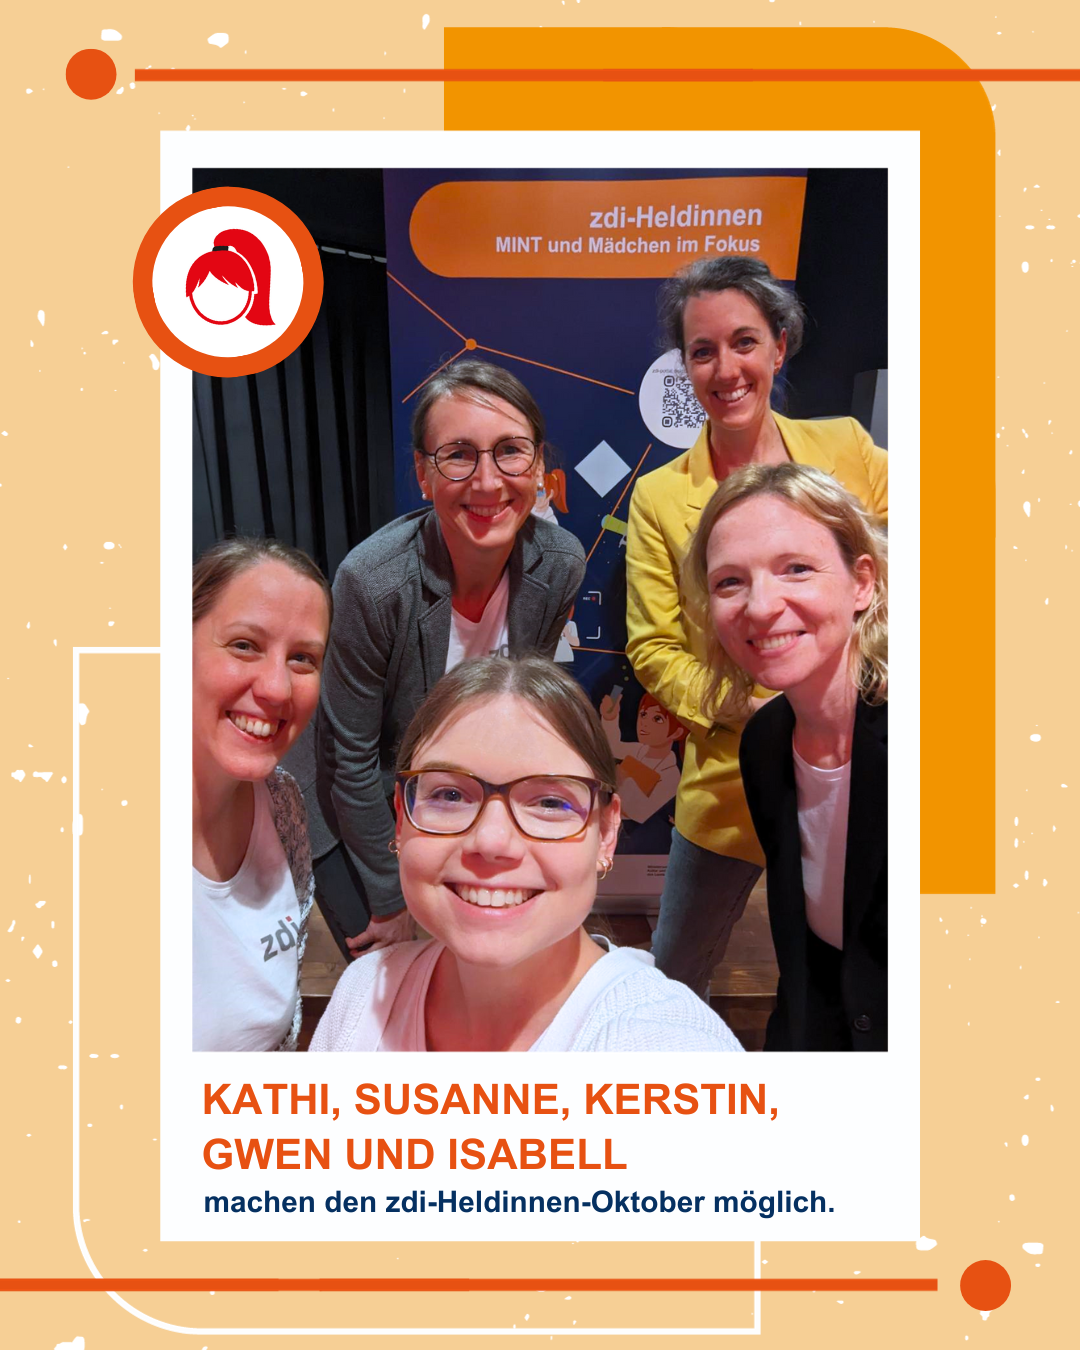 Fotoğrafta kameraya gülümseyen beş kadın görülüyor. Altında şöyle yazıyor: "Kathi, Susanne, Kerstin, Gwen ve Isabell, zdi kahramanları Ekim'i mümkün kılıyor."